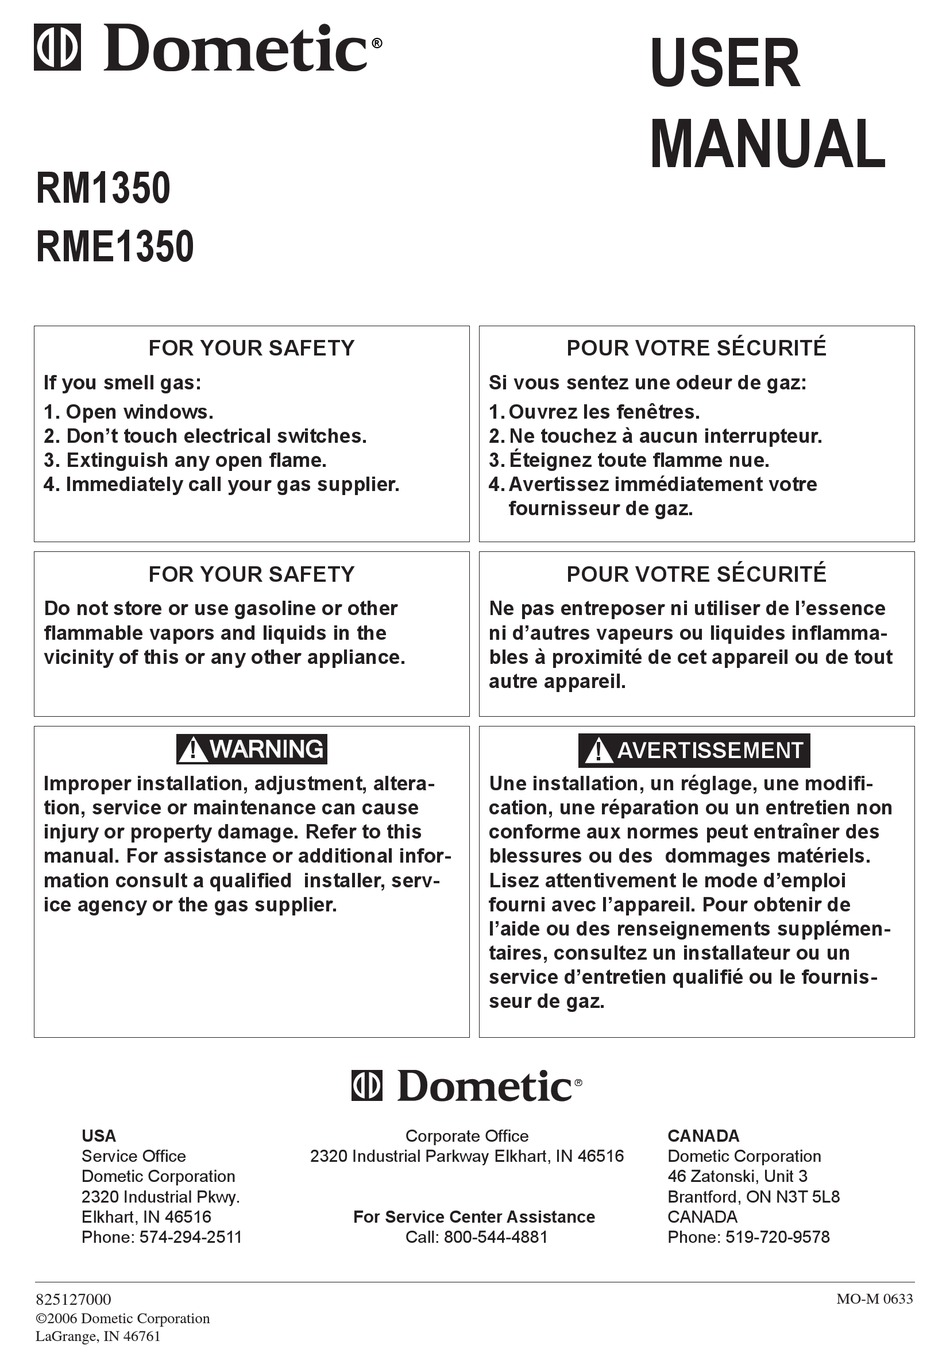 DOMETIC RM1350 USER MANUAL Pdf Download | ManualsLib